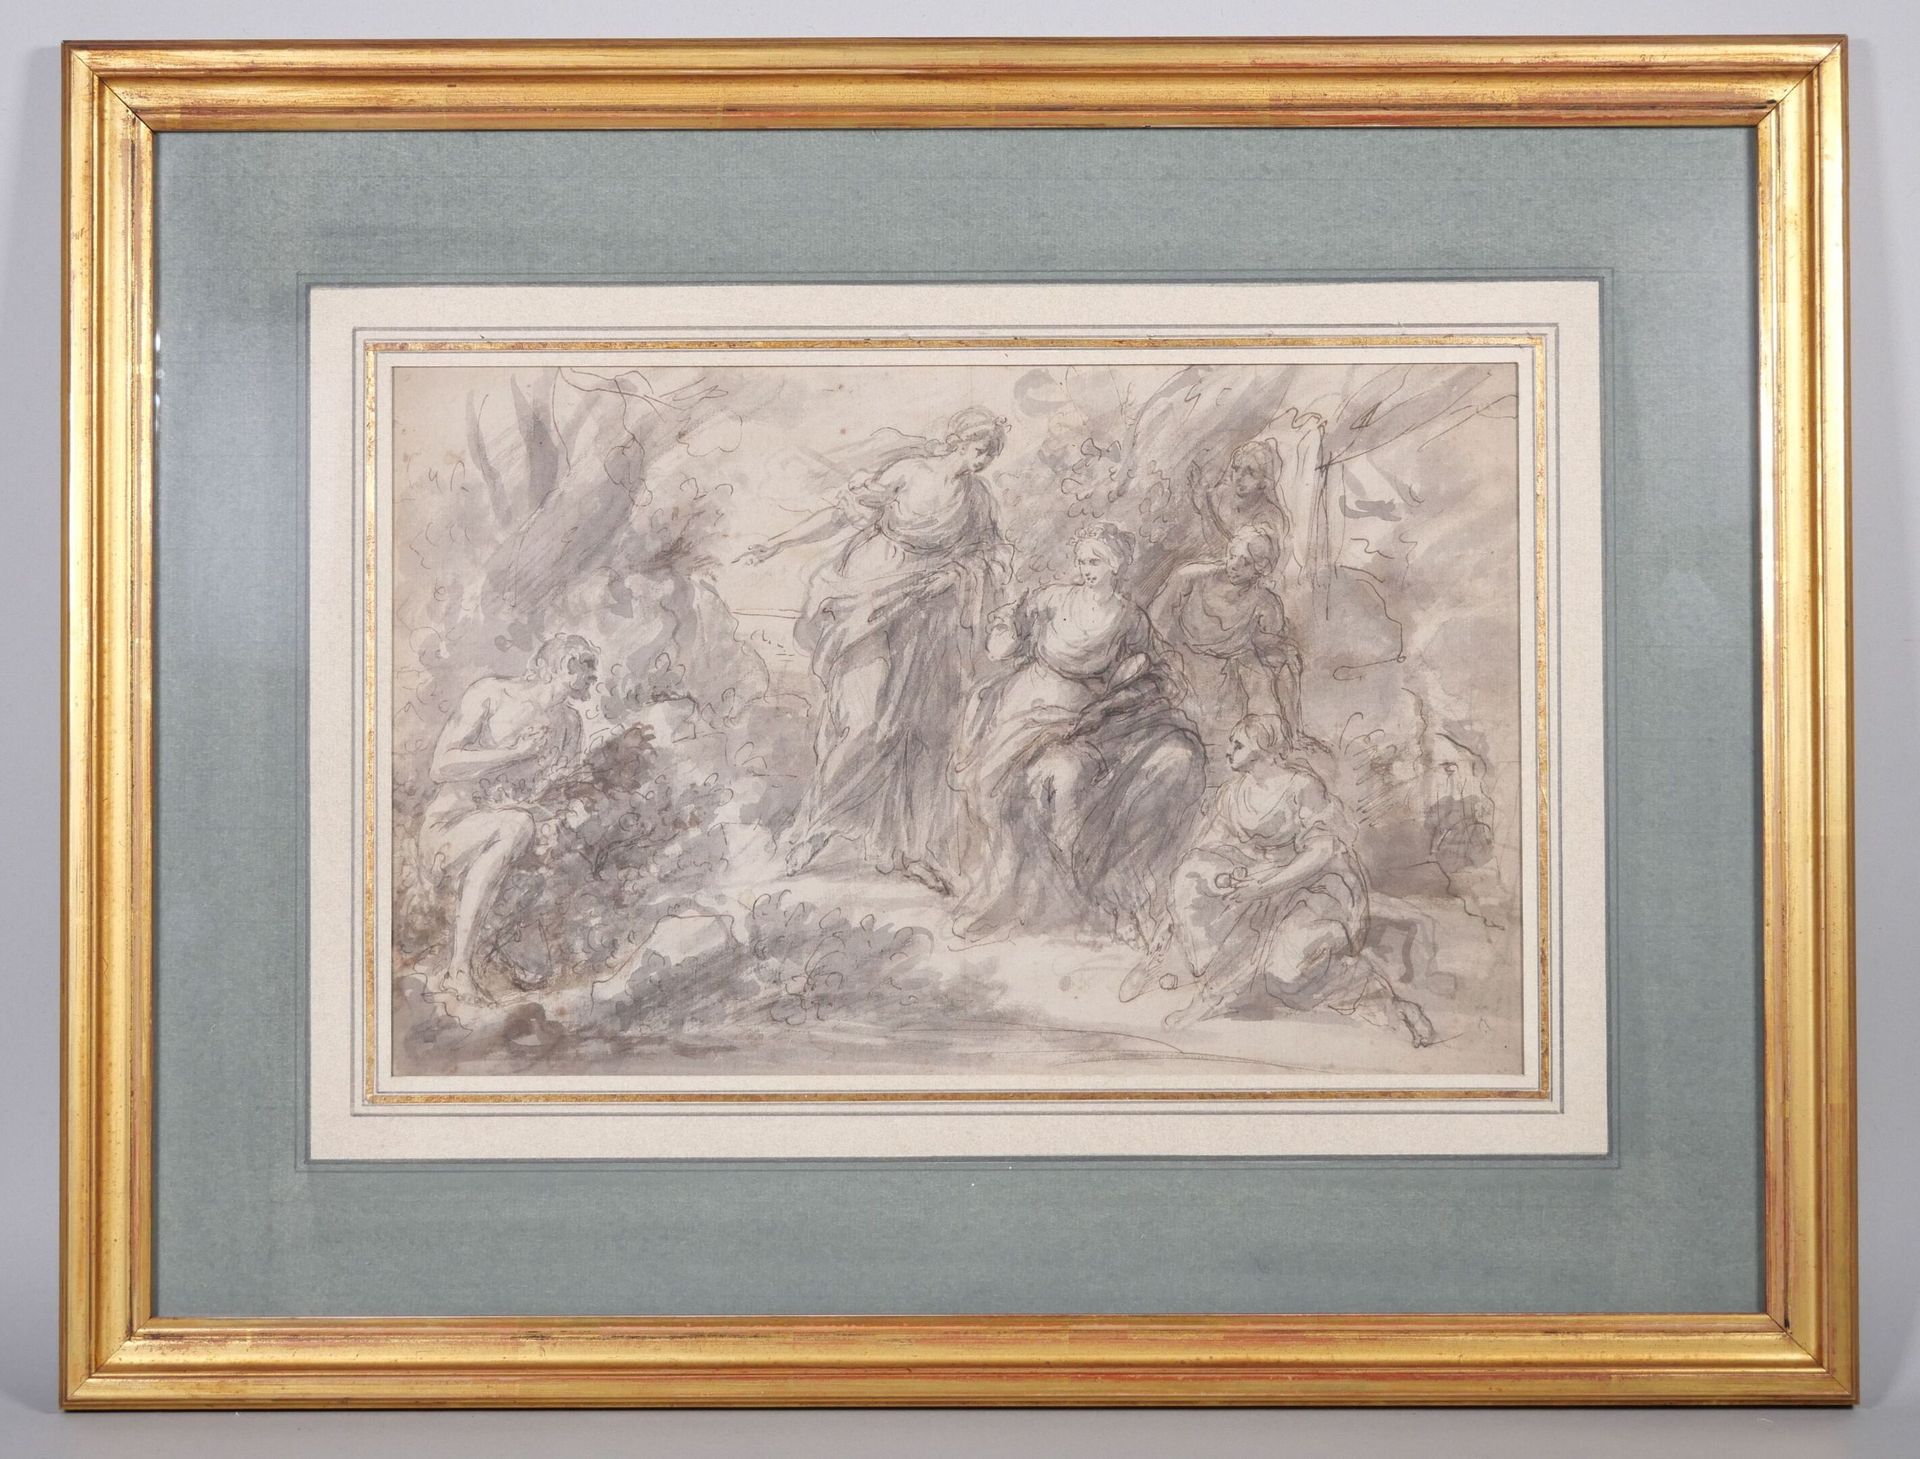 Null Italienische Schule um 1700
Mythologische Szene
Feder und graue Tinte auf s&hellip;